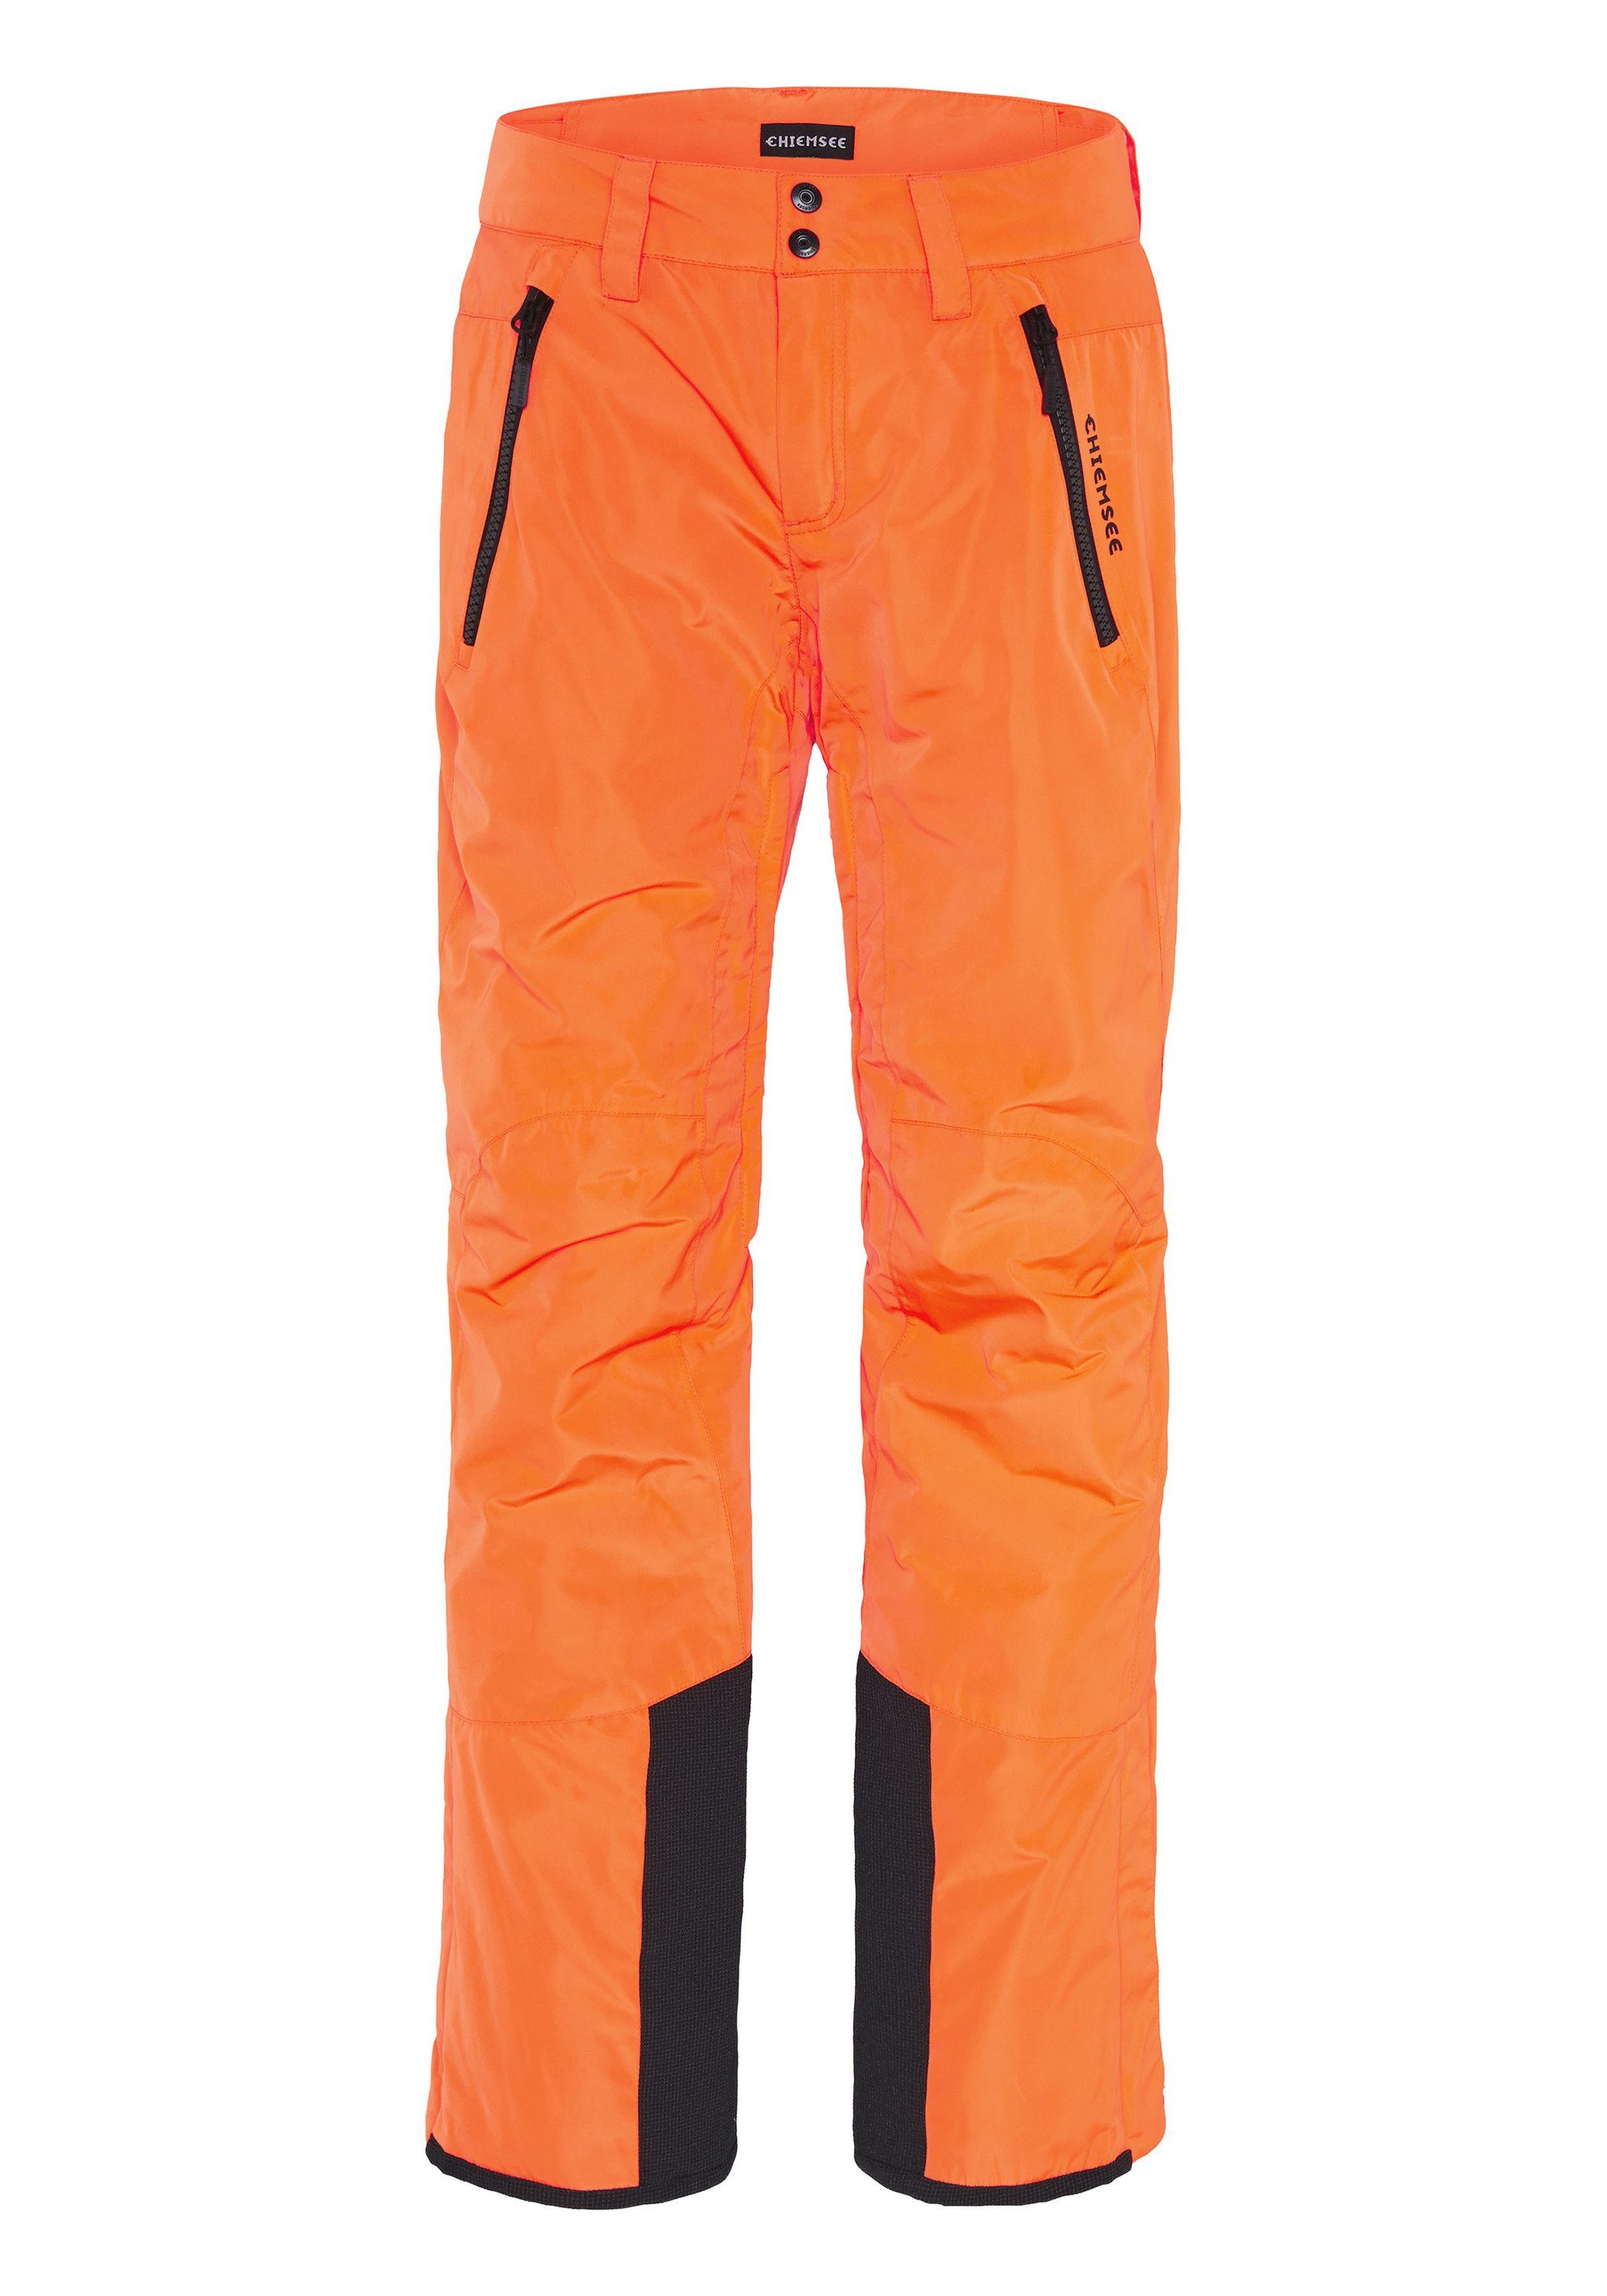 1 Chiemsee Skihose Sporthose Schneefang orange mit